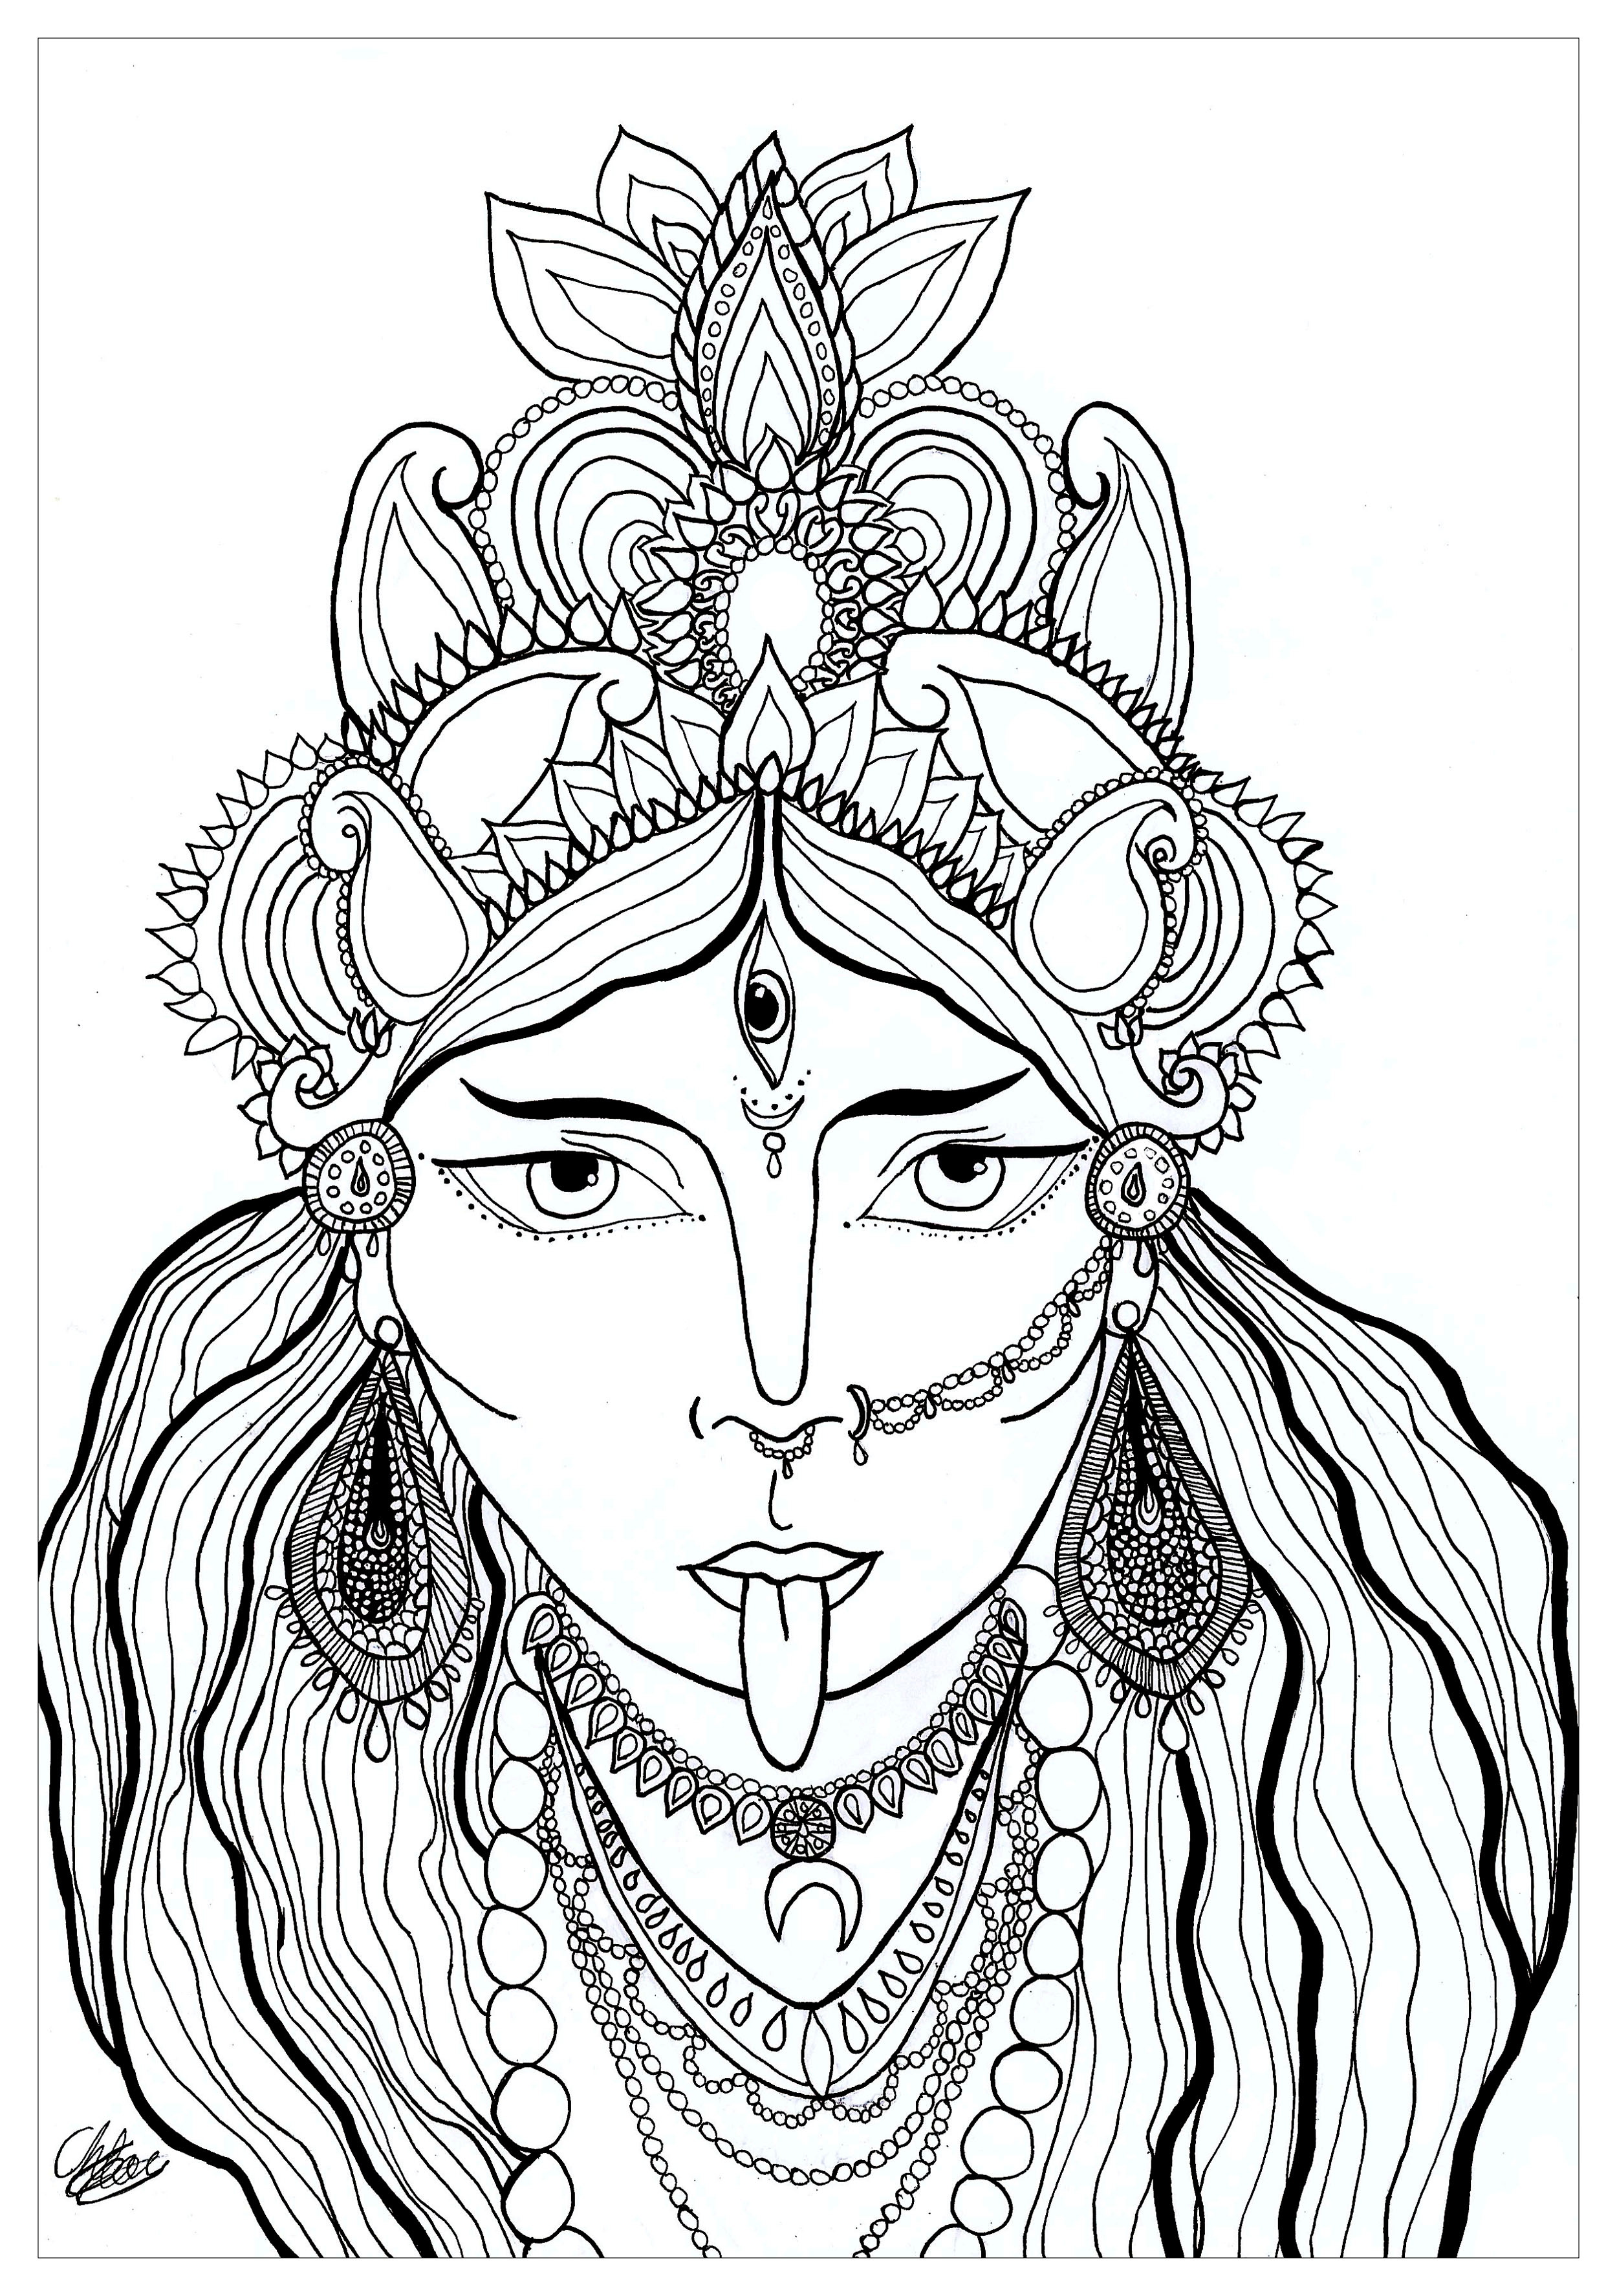 Coloriage de la déesse Kali qui provient de la religion Hindou. Elle est la déesse de la préservation, de la transformation et de la destruction. Kali est aussi appelée la Déesse noire.